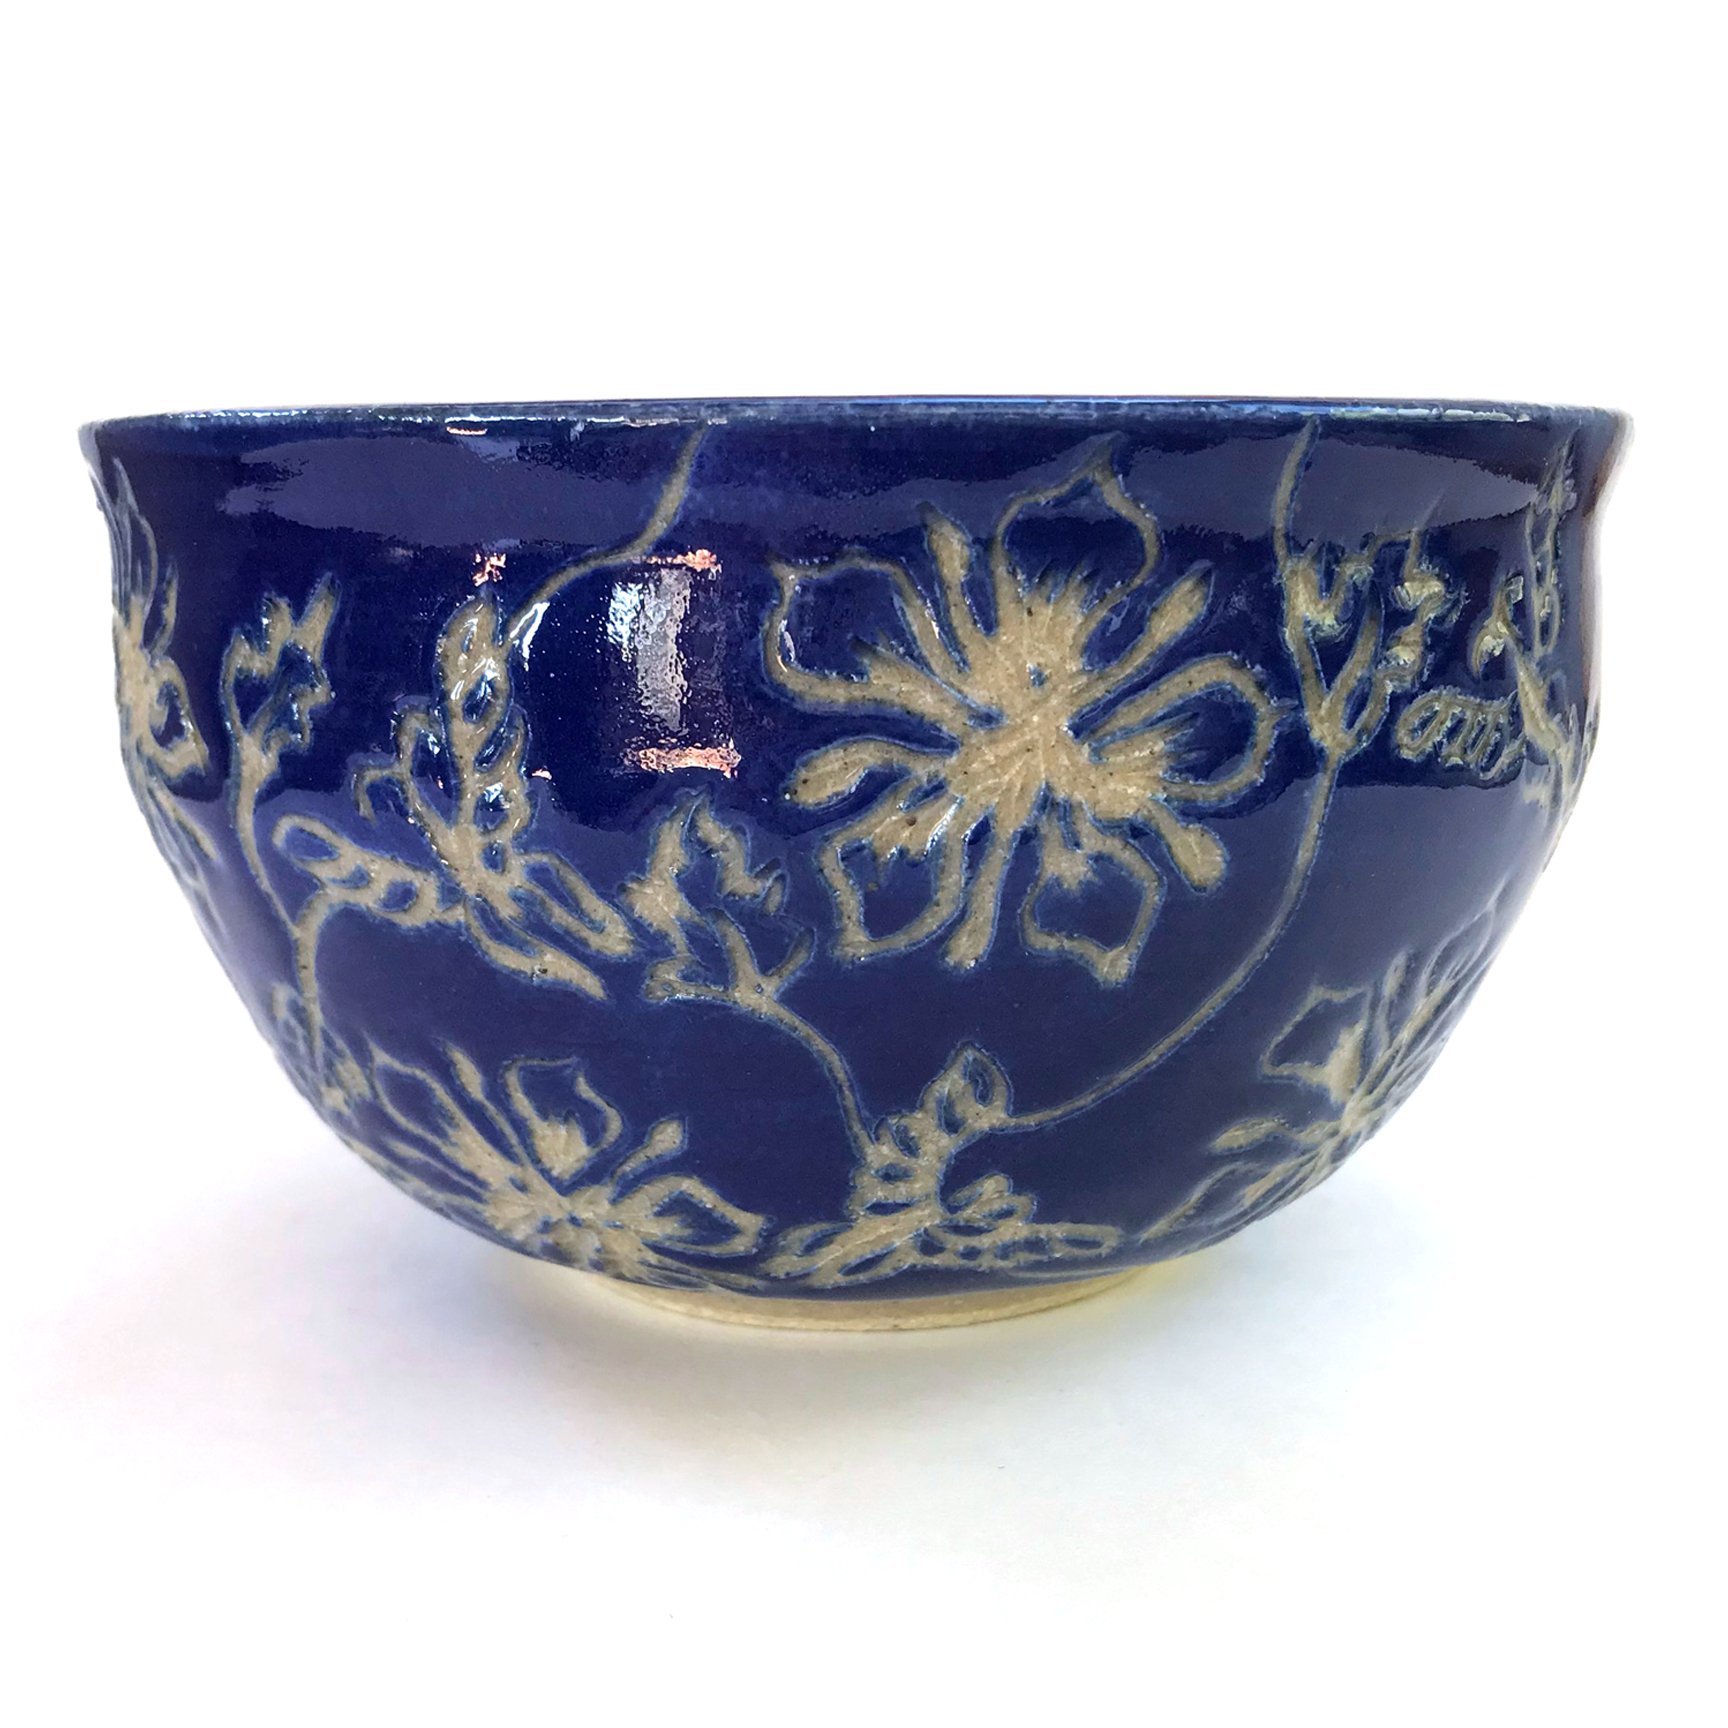 Sgraffito floral bowl